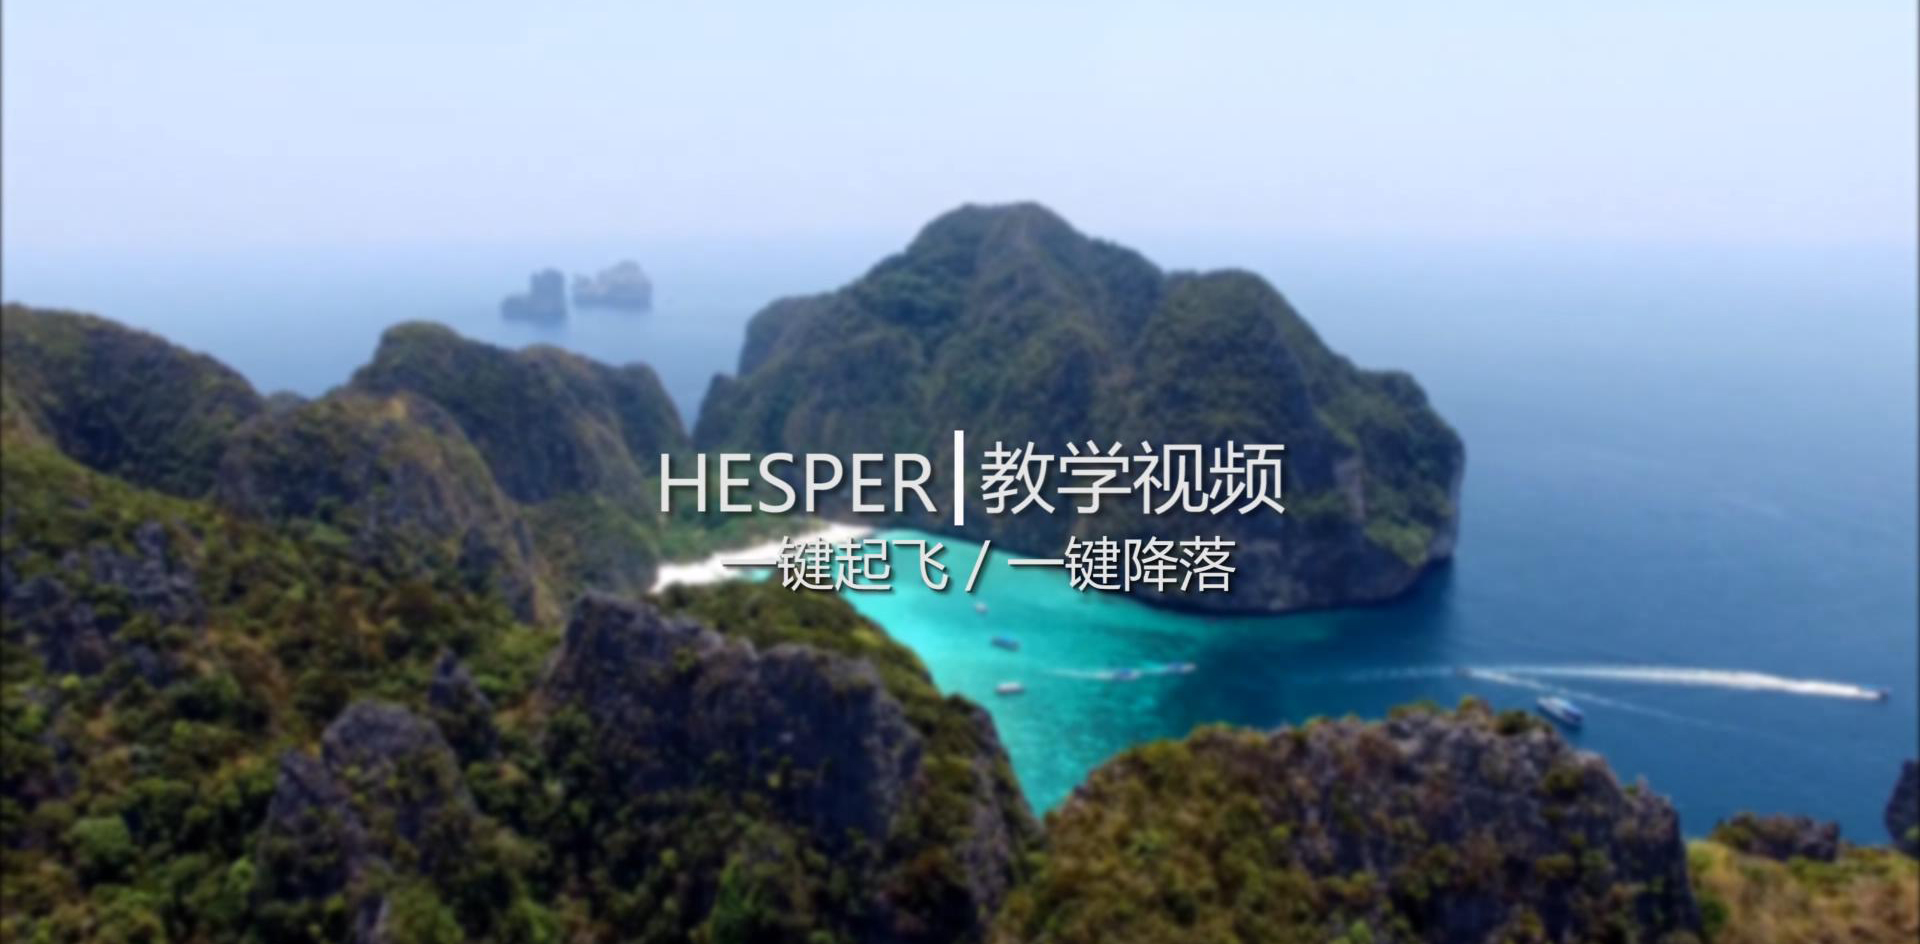 HESPER - 遙控器版 一鍵起飛/降落